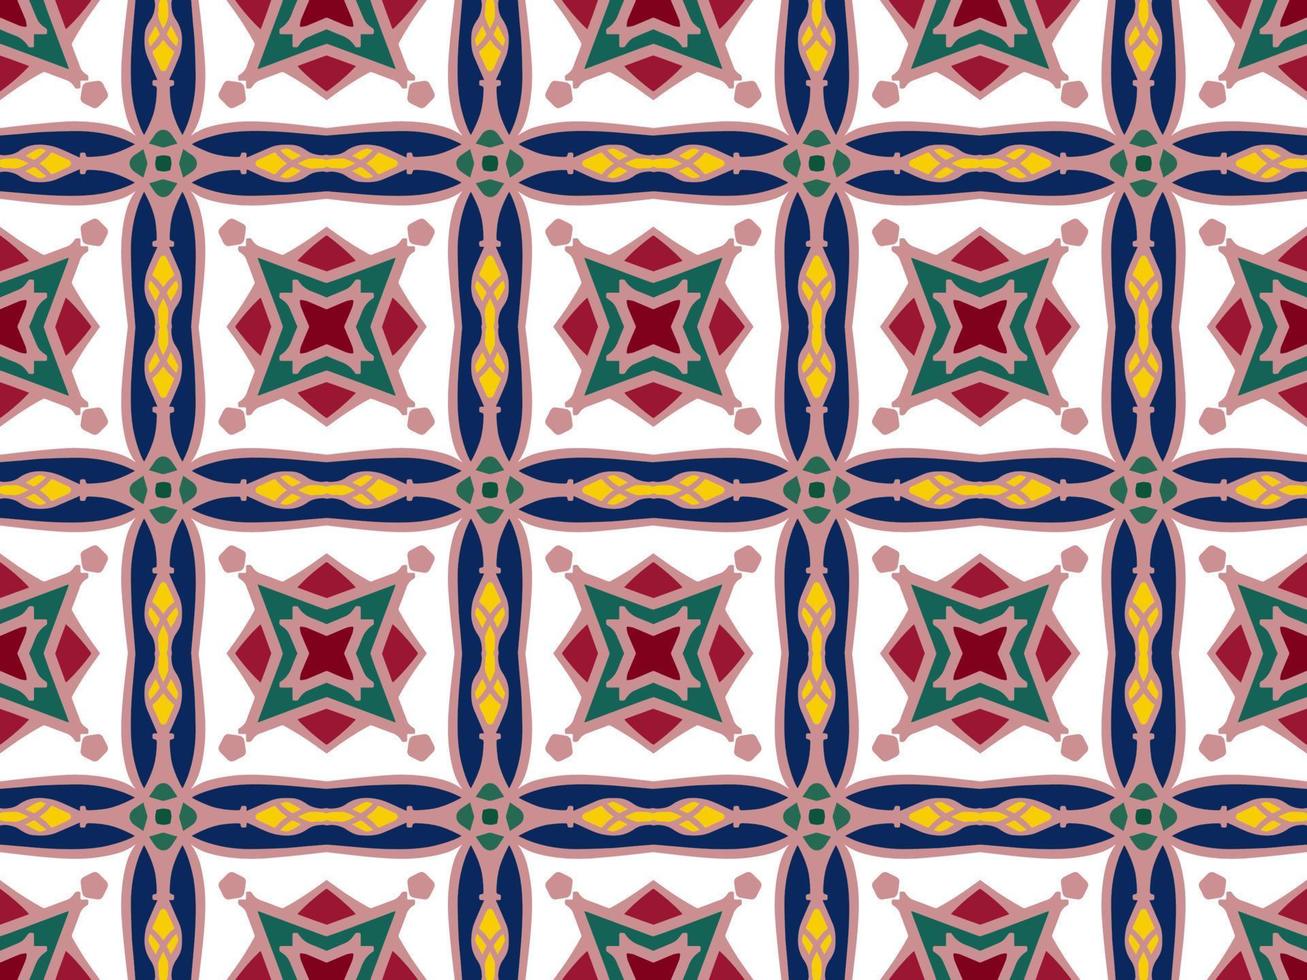 buntes, nahtloses Muster mit Stammesform. entworfen in ikat, boho, aztekisch, volkstümlich, motiv, luxuriöser arabischer stil. Ideal für Stoffkleidung, Keramik, Tapeten. Vektor-Illustration vektor